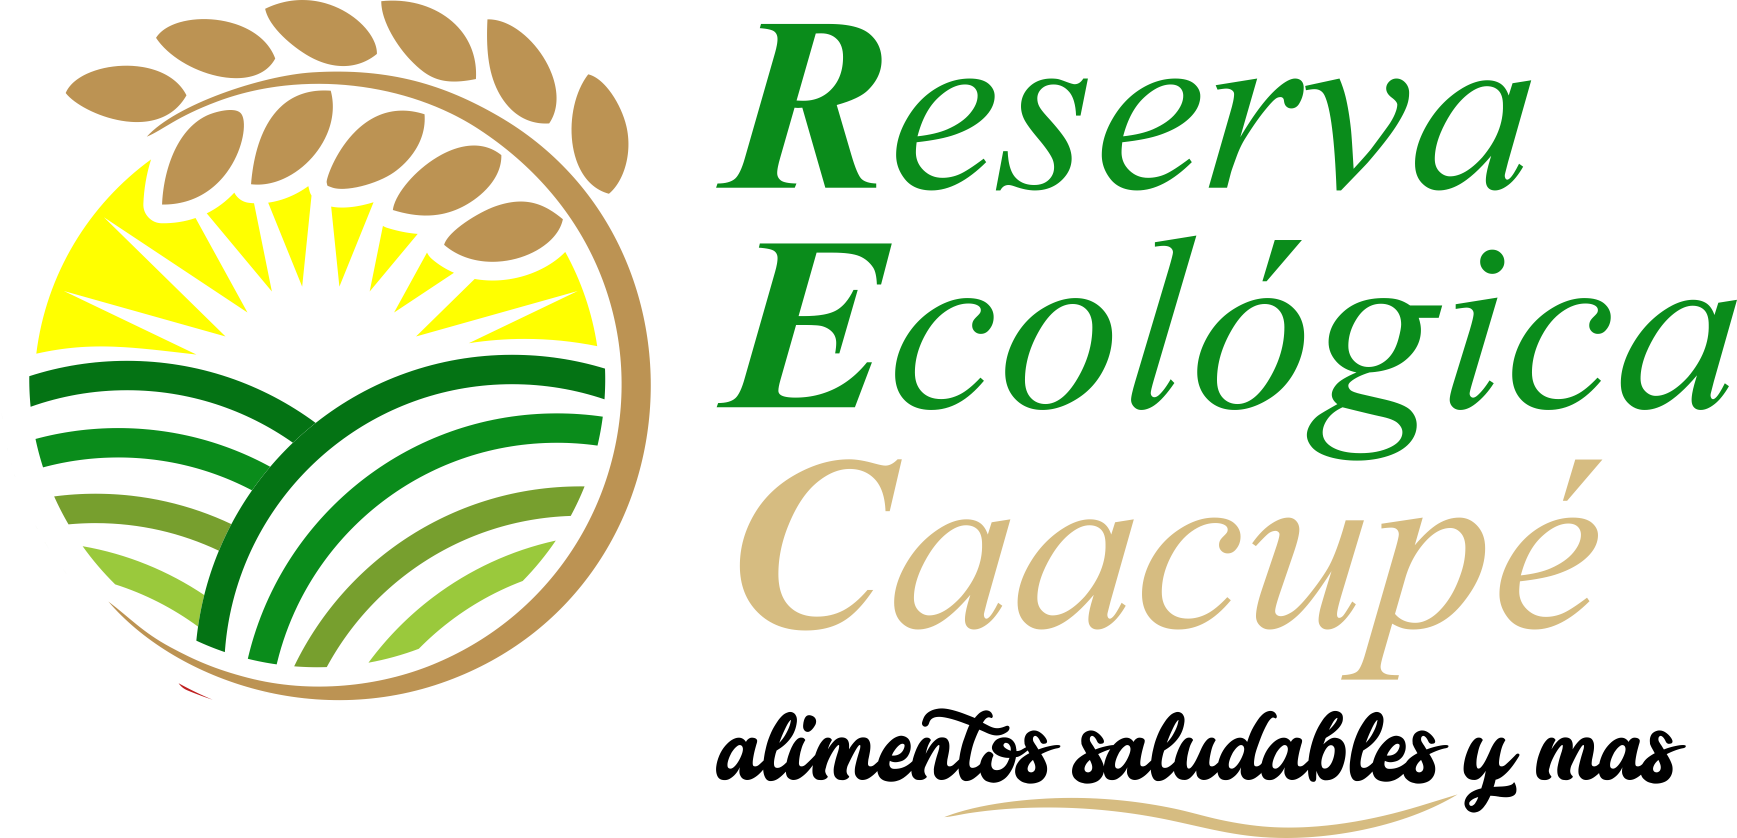 Reserva Ecológica Caacupé, Igl-Web